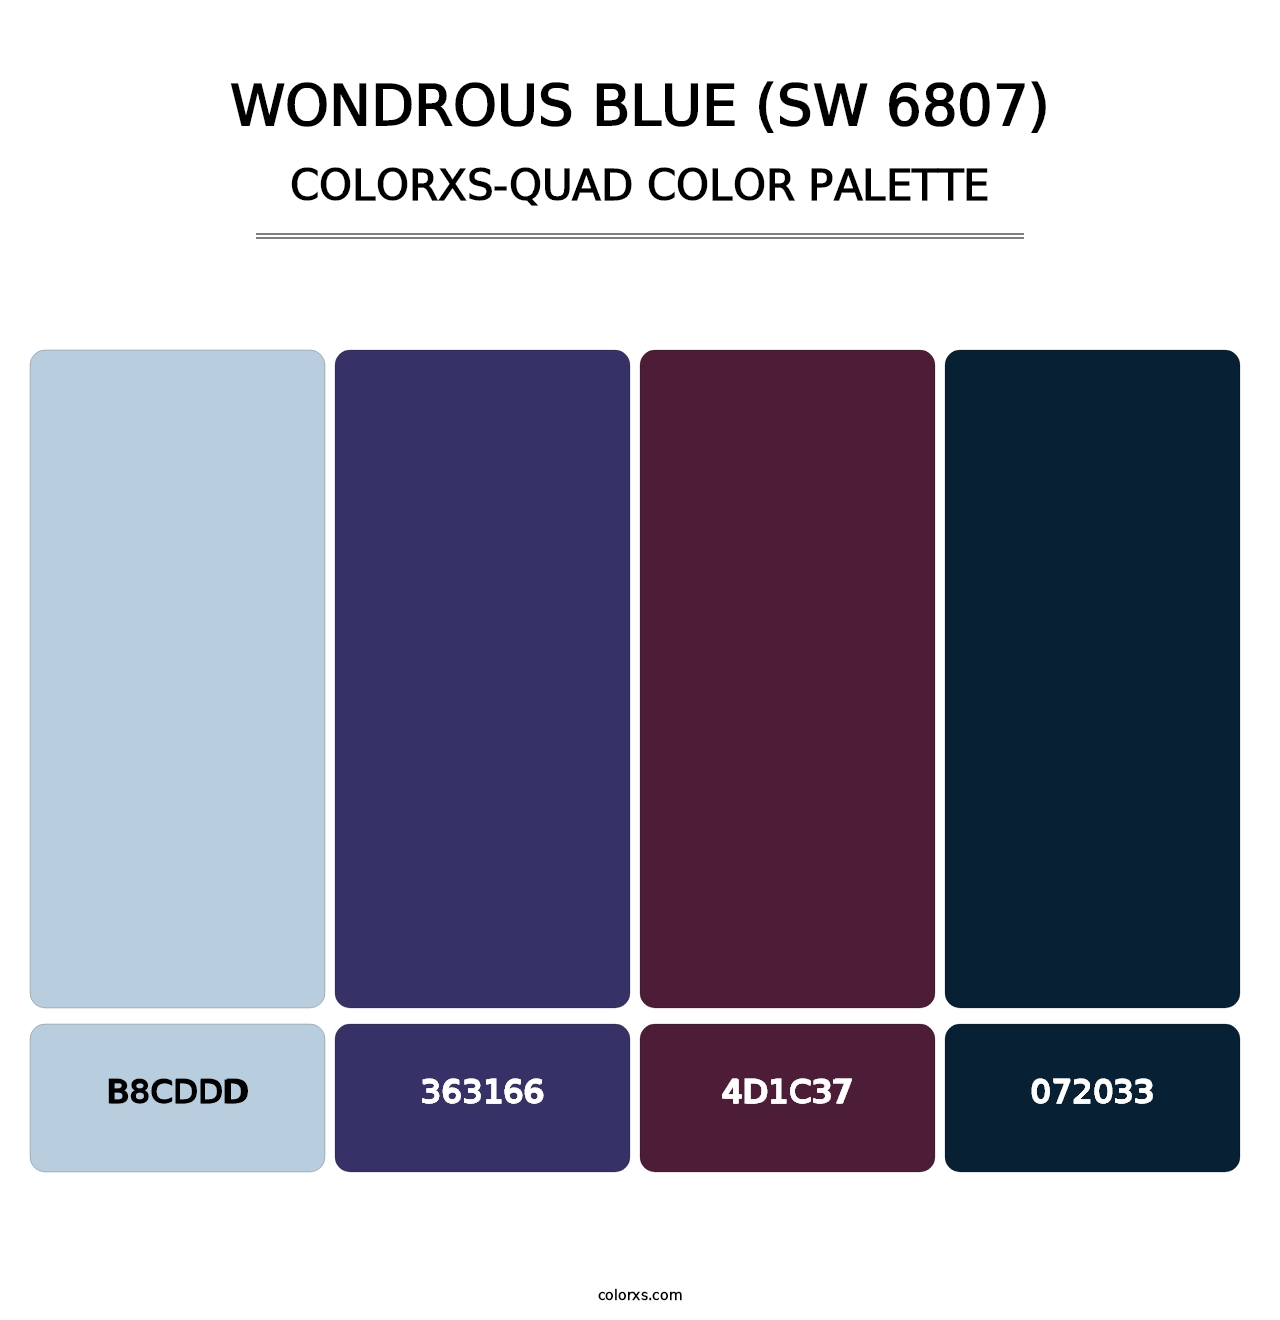 Wondrous Blue (SW 6807) - Colorxs Quad Palette